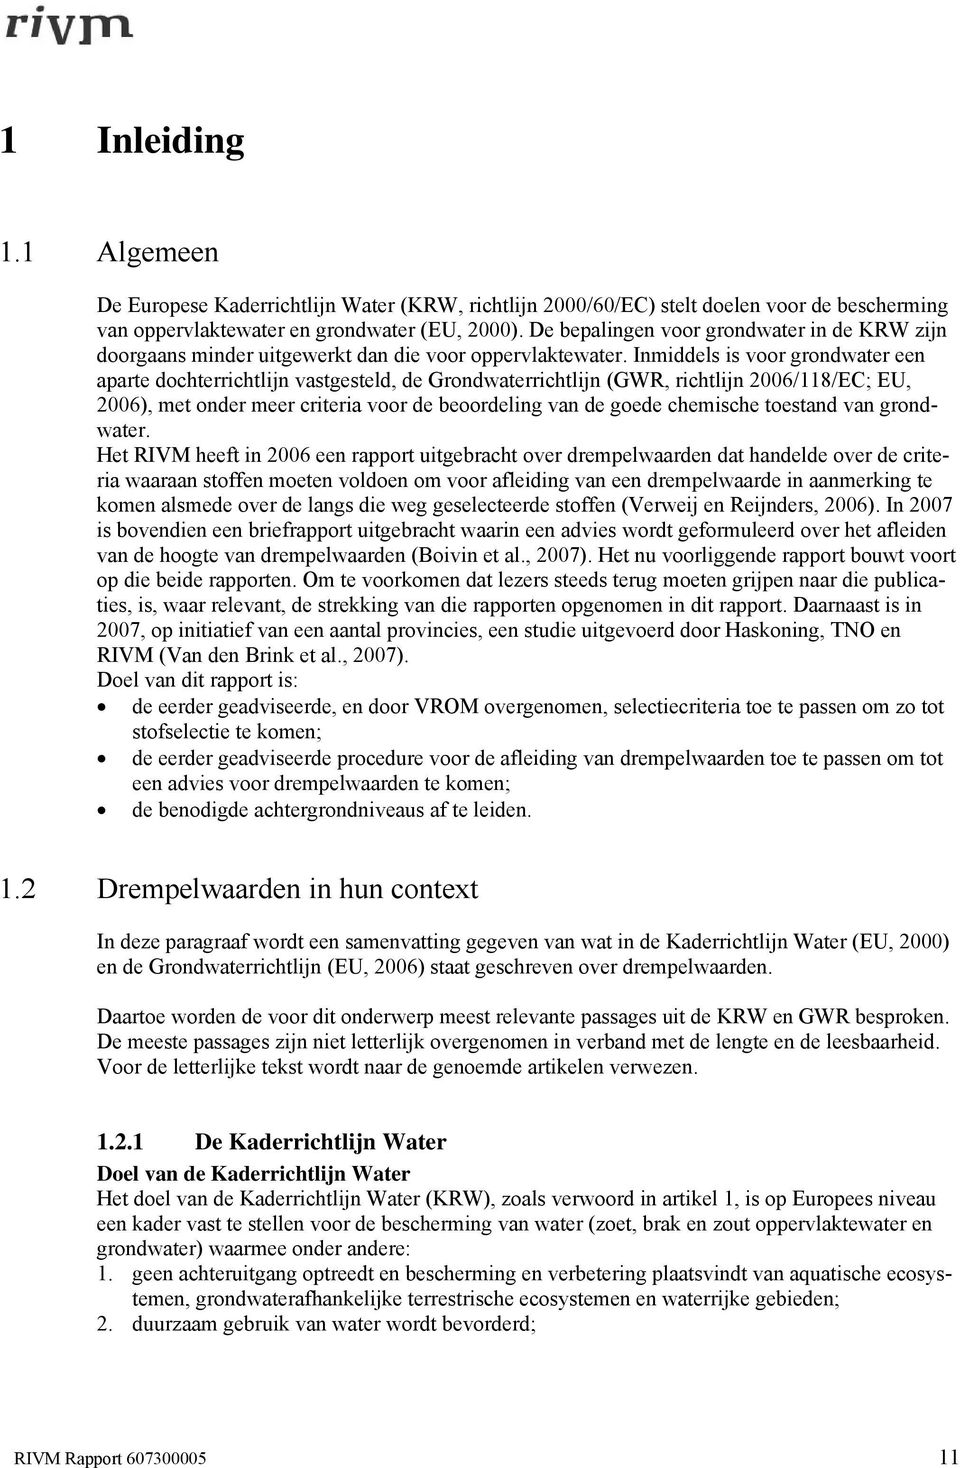 Inmiddels is voor grondwater een aparte dochterrichtlijn vastgesteld, de Grondwaterrichtlijn (GWR, richtlijn 2006/118/EC; EU, 2006), met onder meer criteria voor de beoordeling van de goede chemische